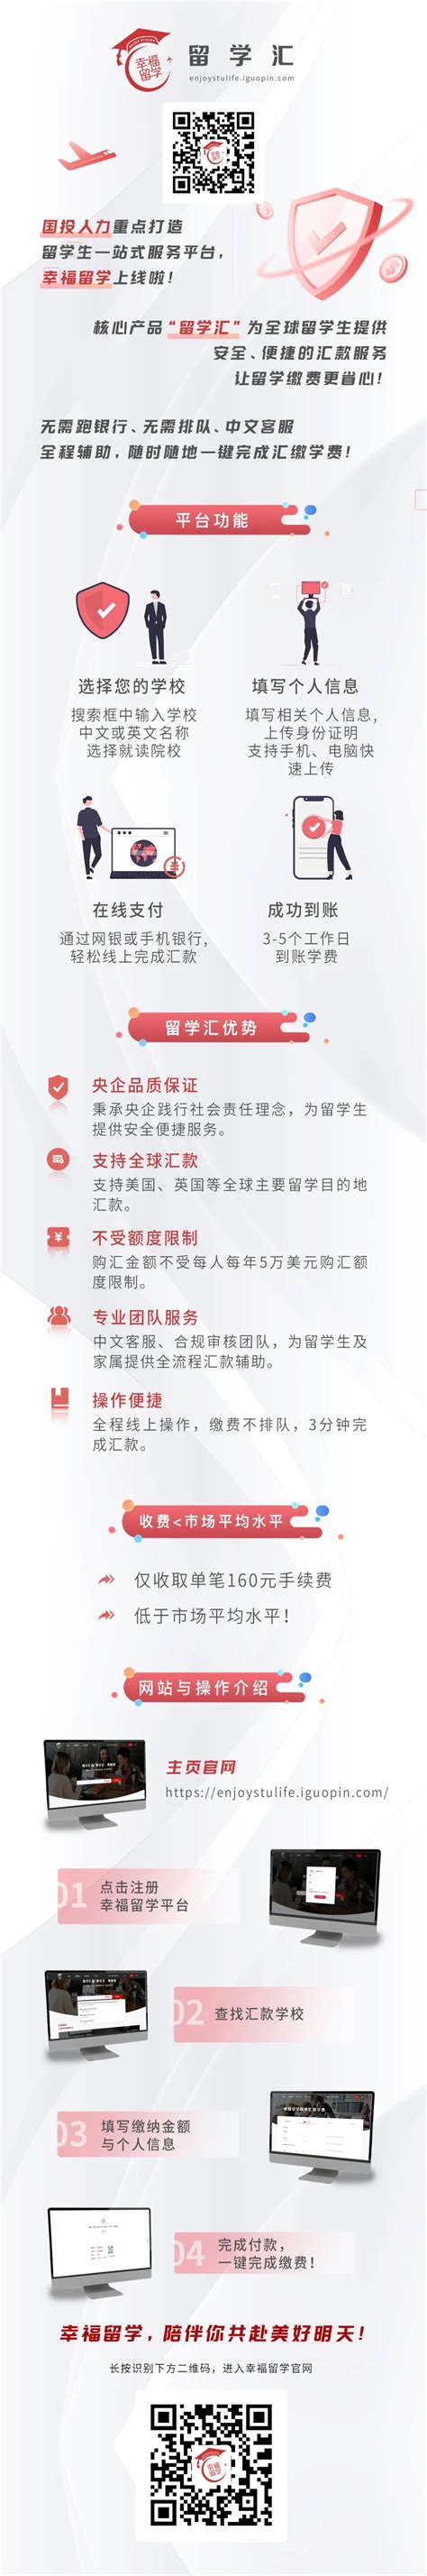 中国日报“留学中国”信息服务平台北外频道开通-留学生办公室